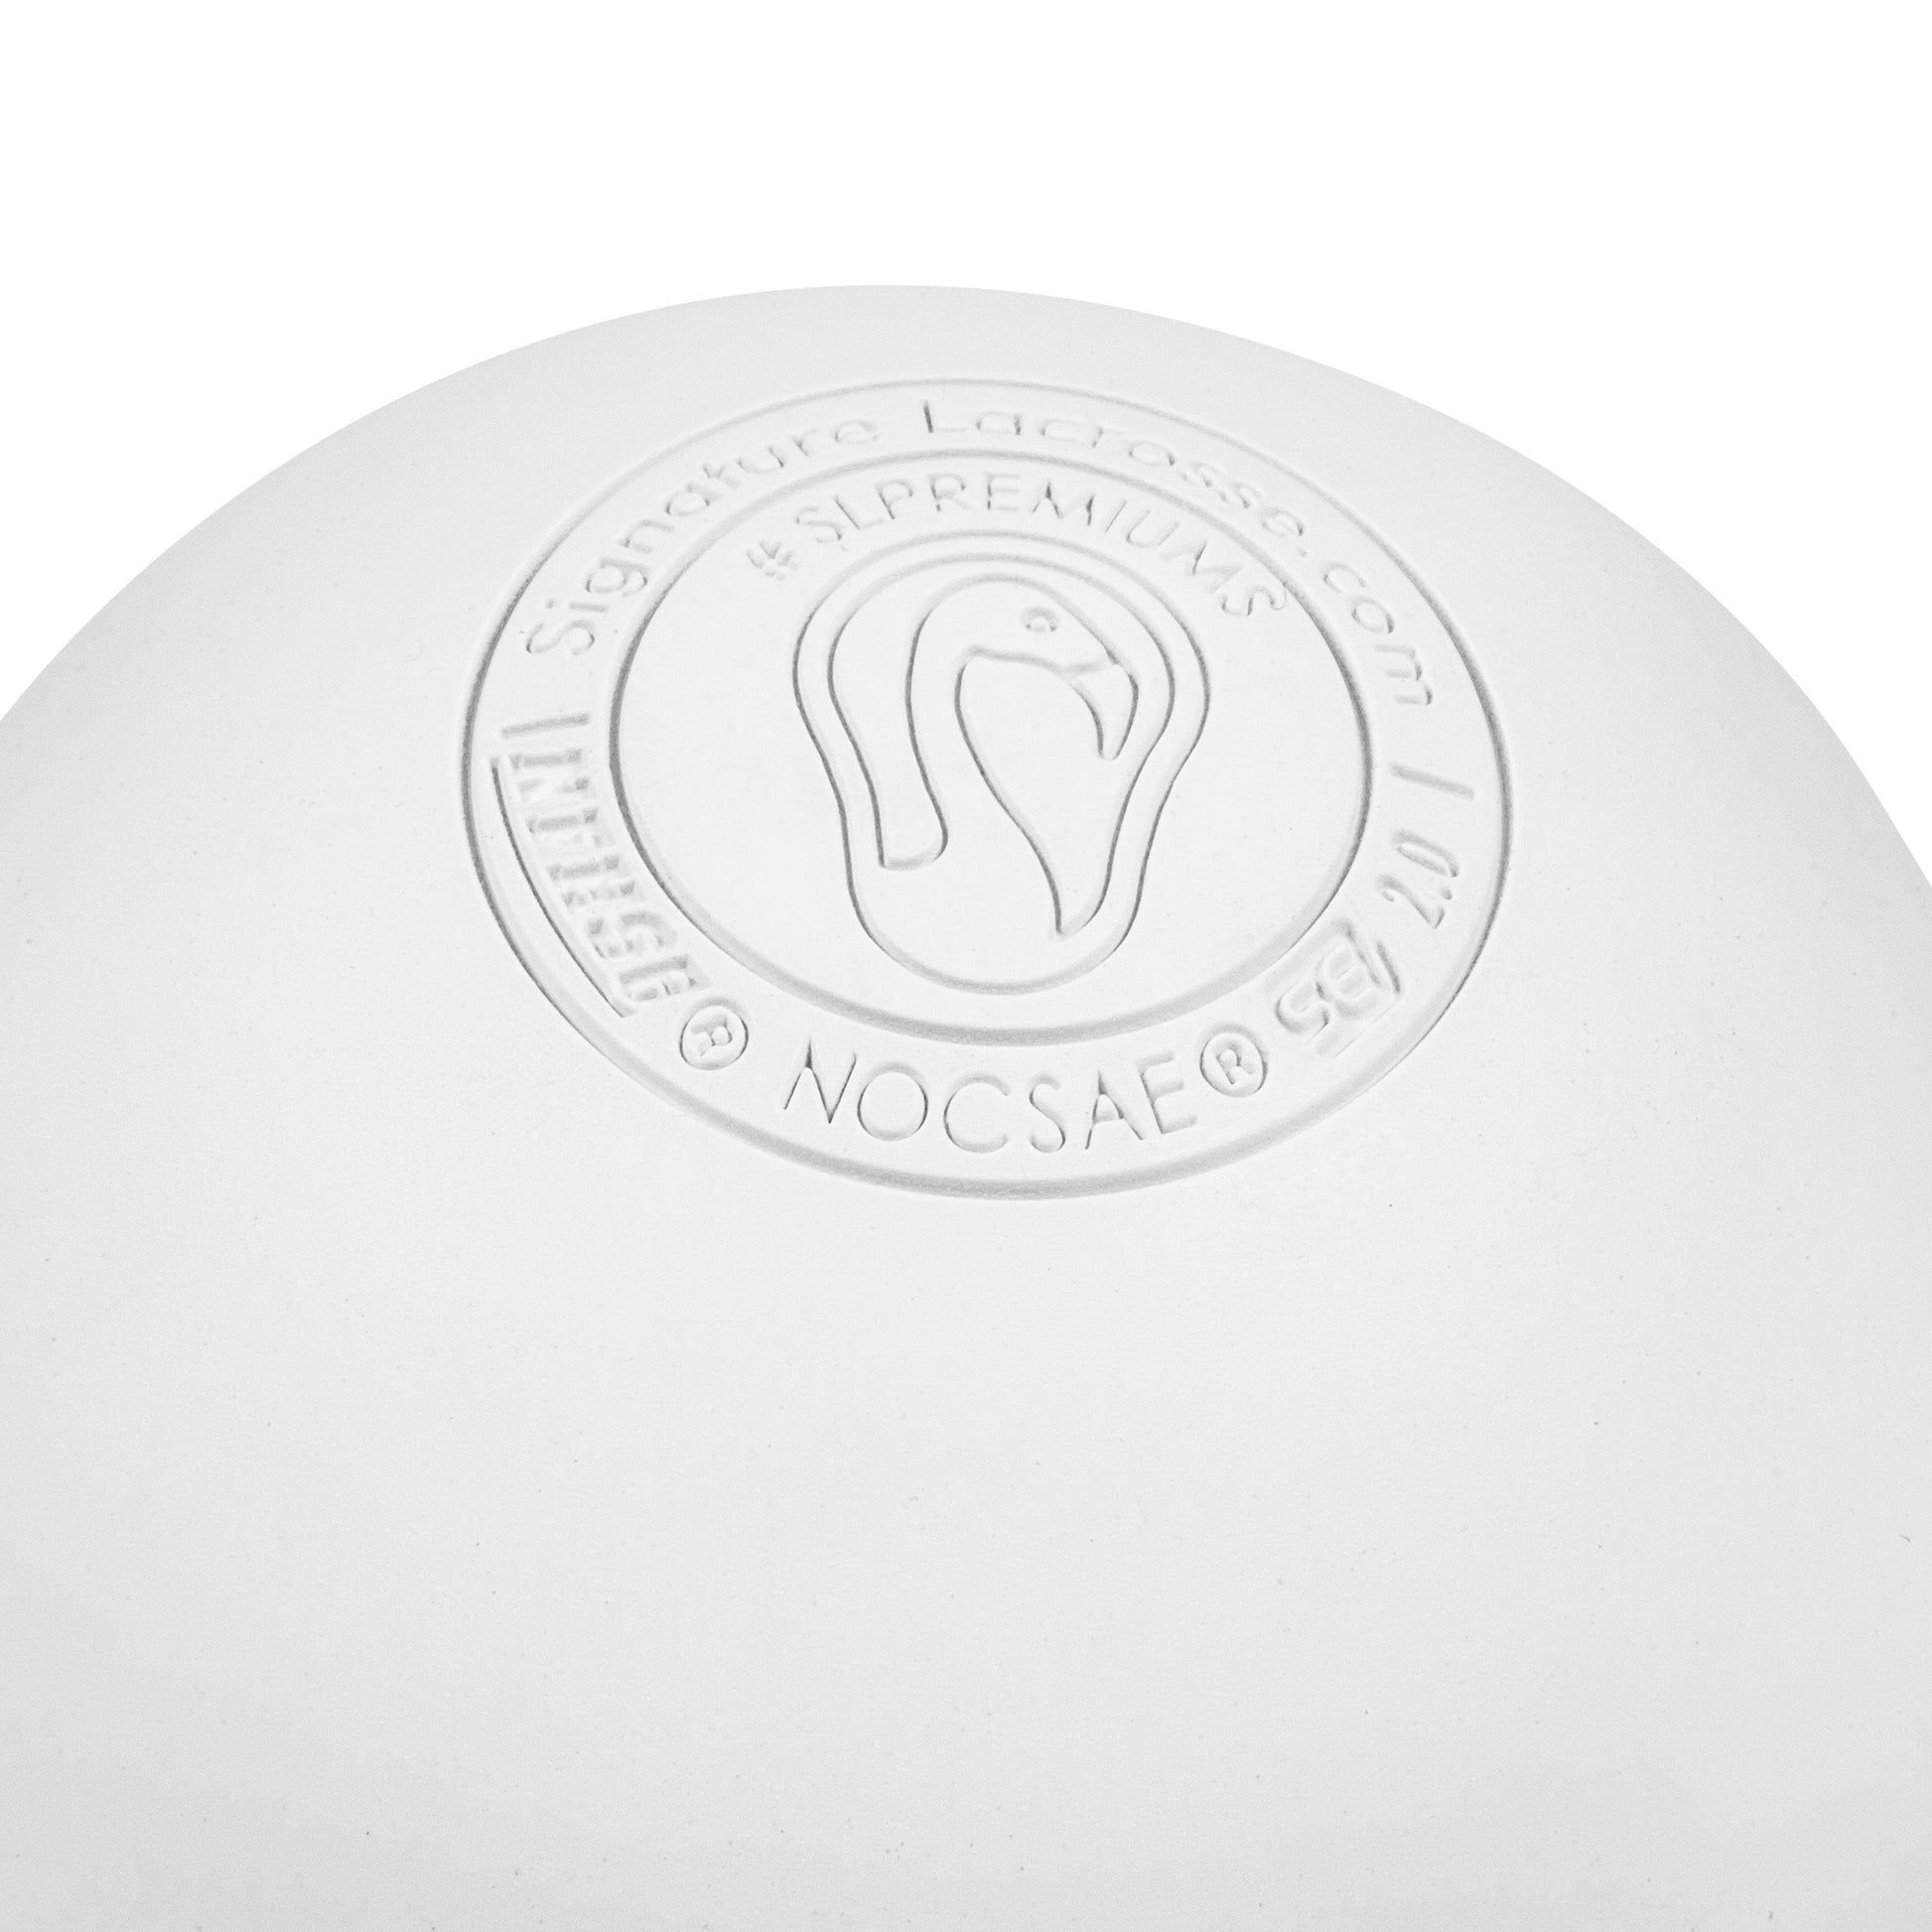 Case of 100 Signature Premium NOCSAE SEI NFHS NCAA Lacrosse Balls | White Signature Lacrosse